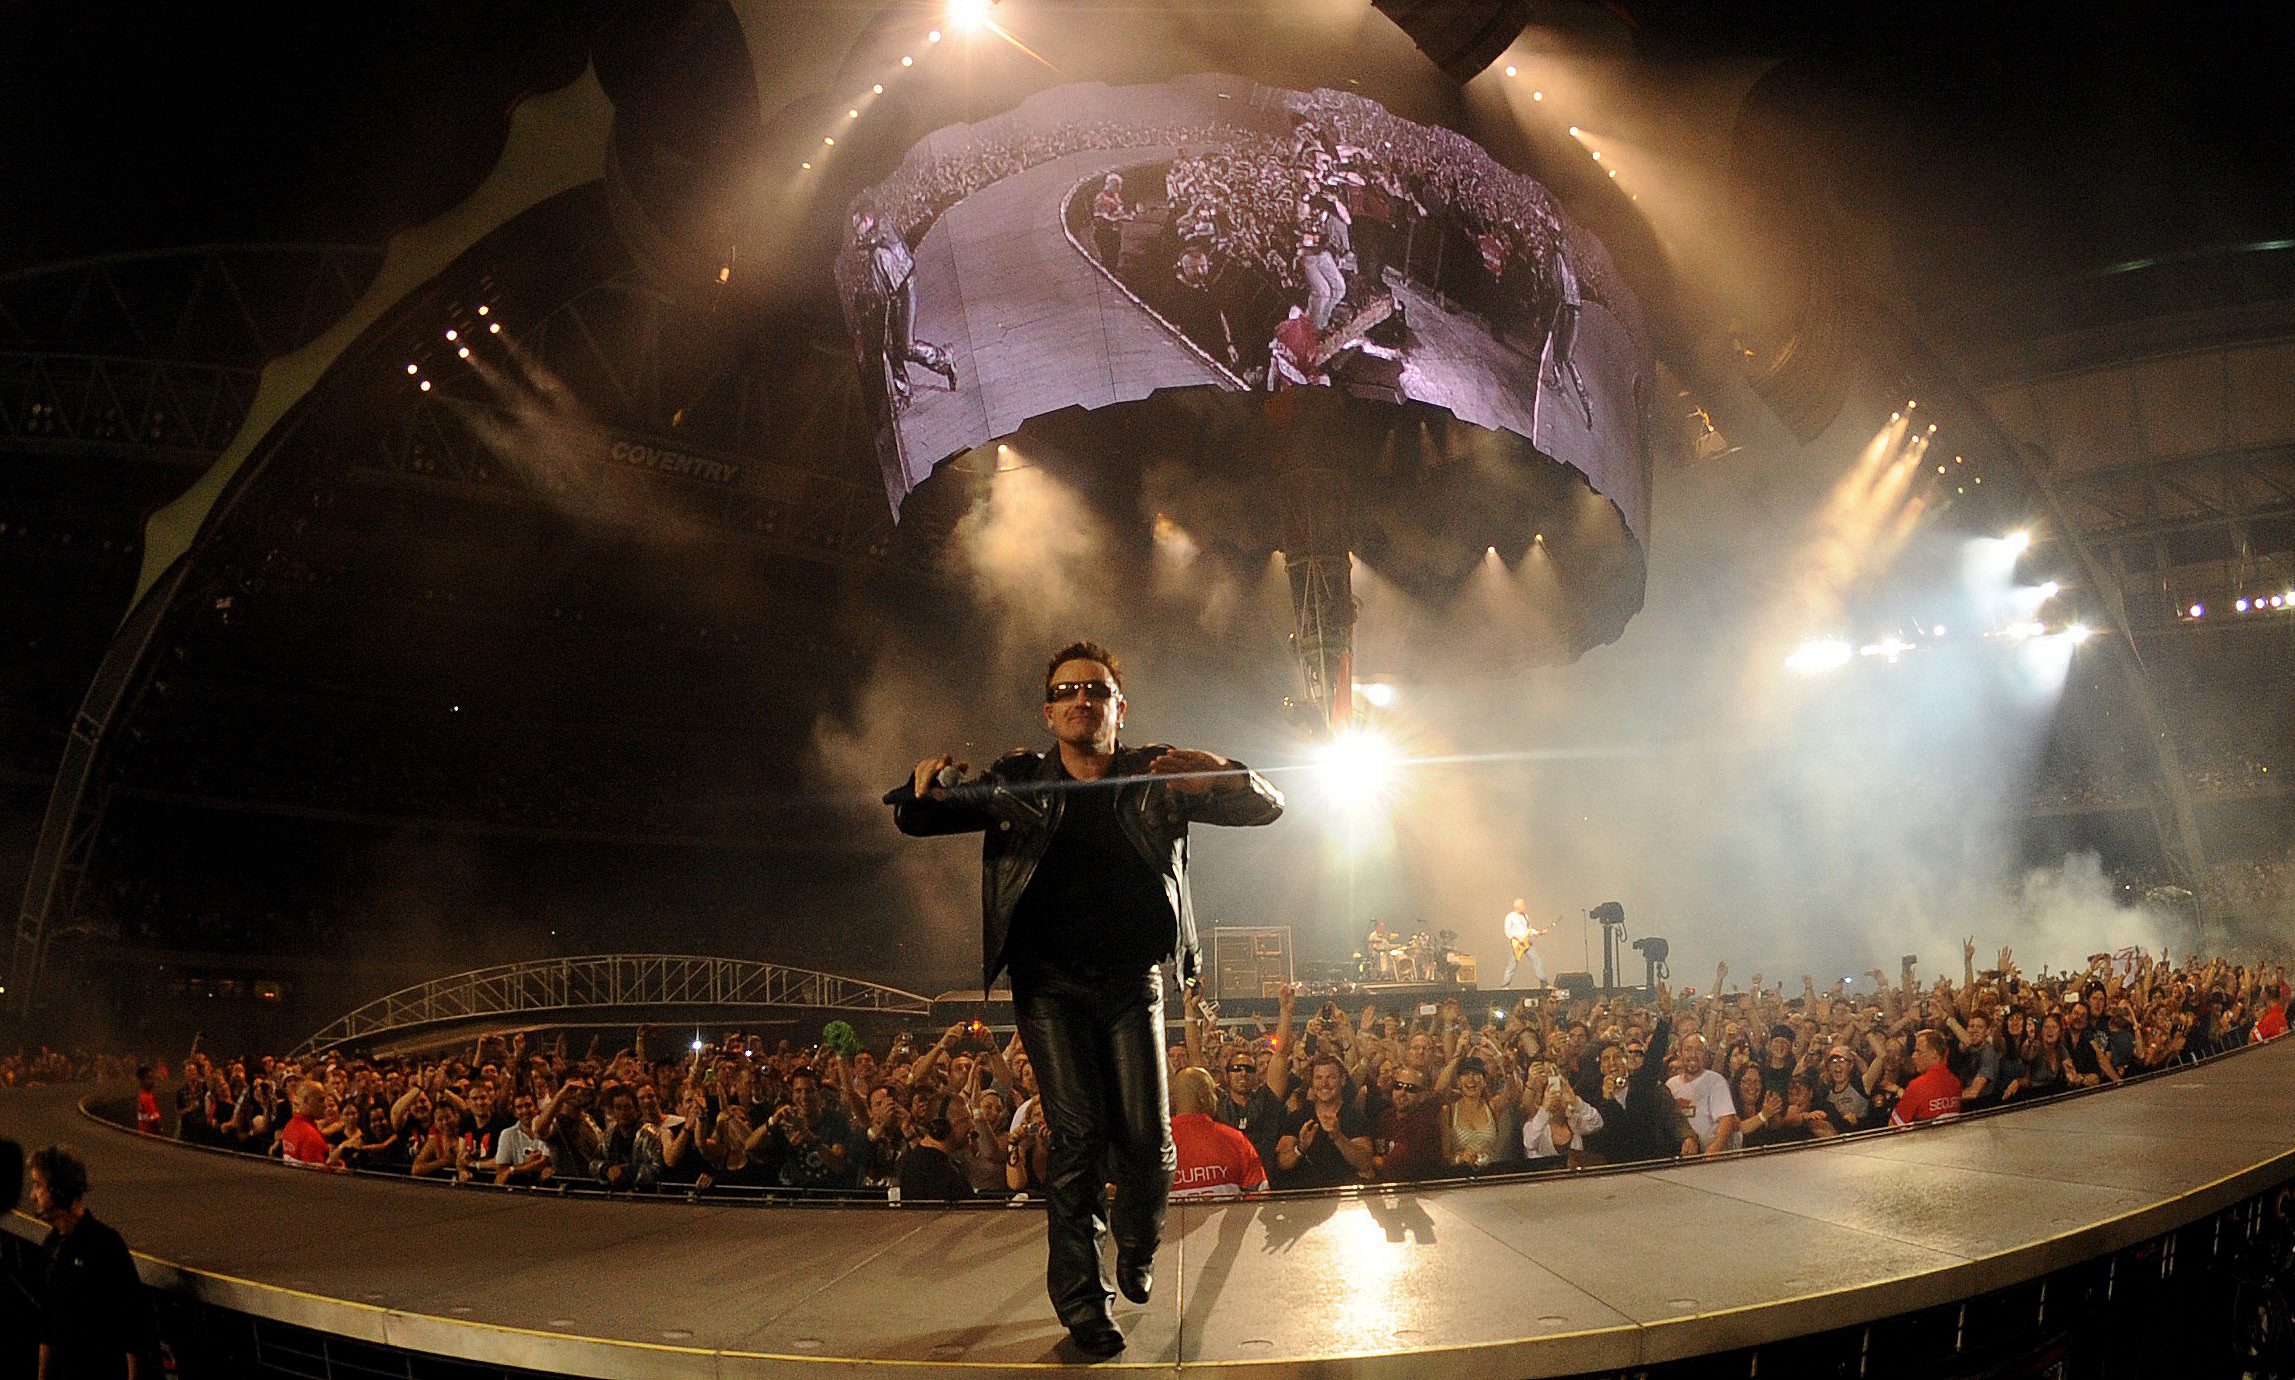 <b>Παγκόσμια περιοδεία U2 </b>Από τη Νότιο Αφρική ξεκινάει το συγκρότημα τις συναυλίες